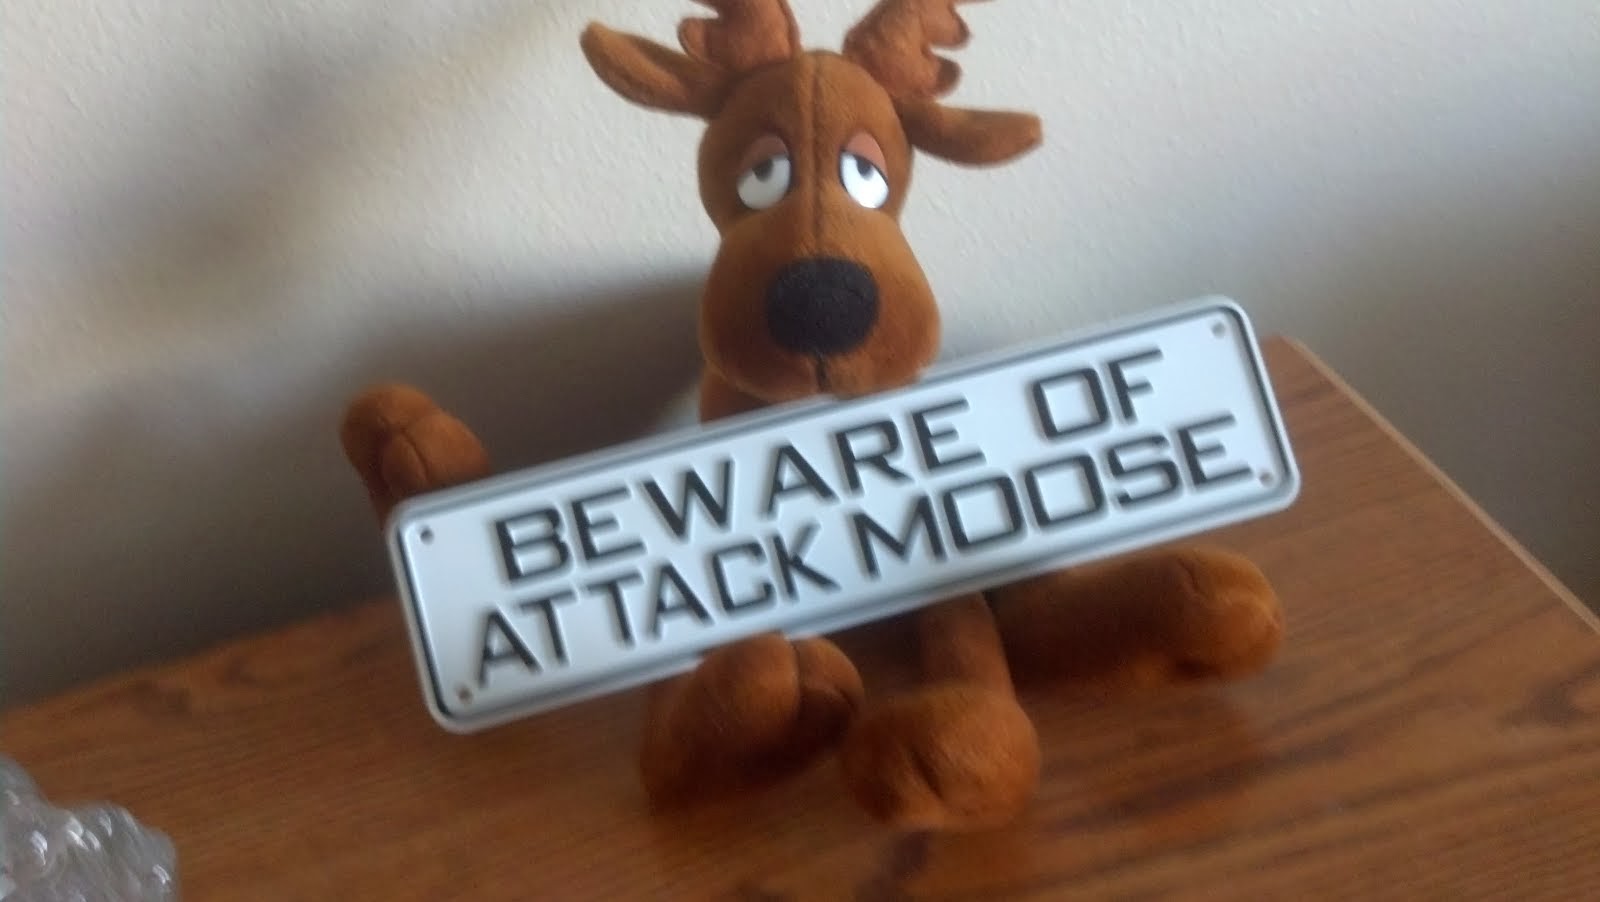 ... Beware of Attack Moose ...